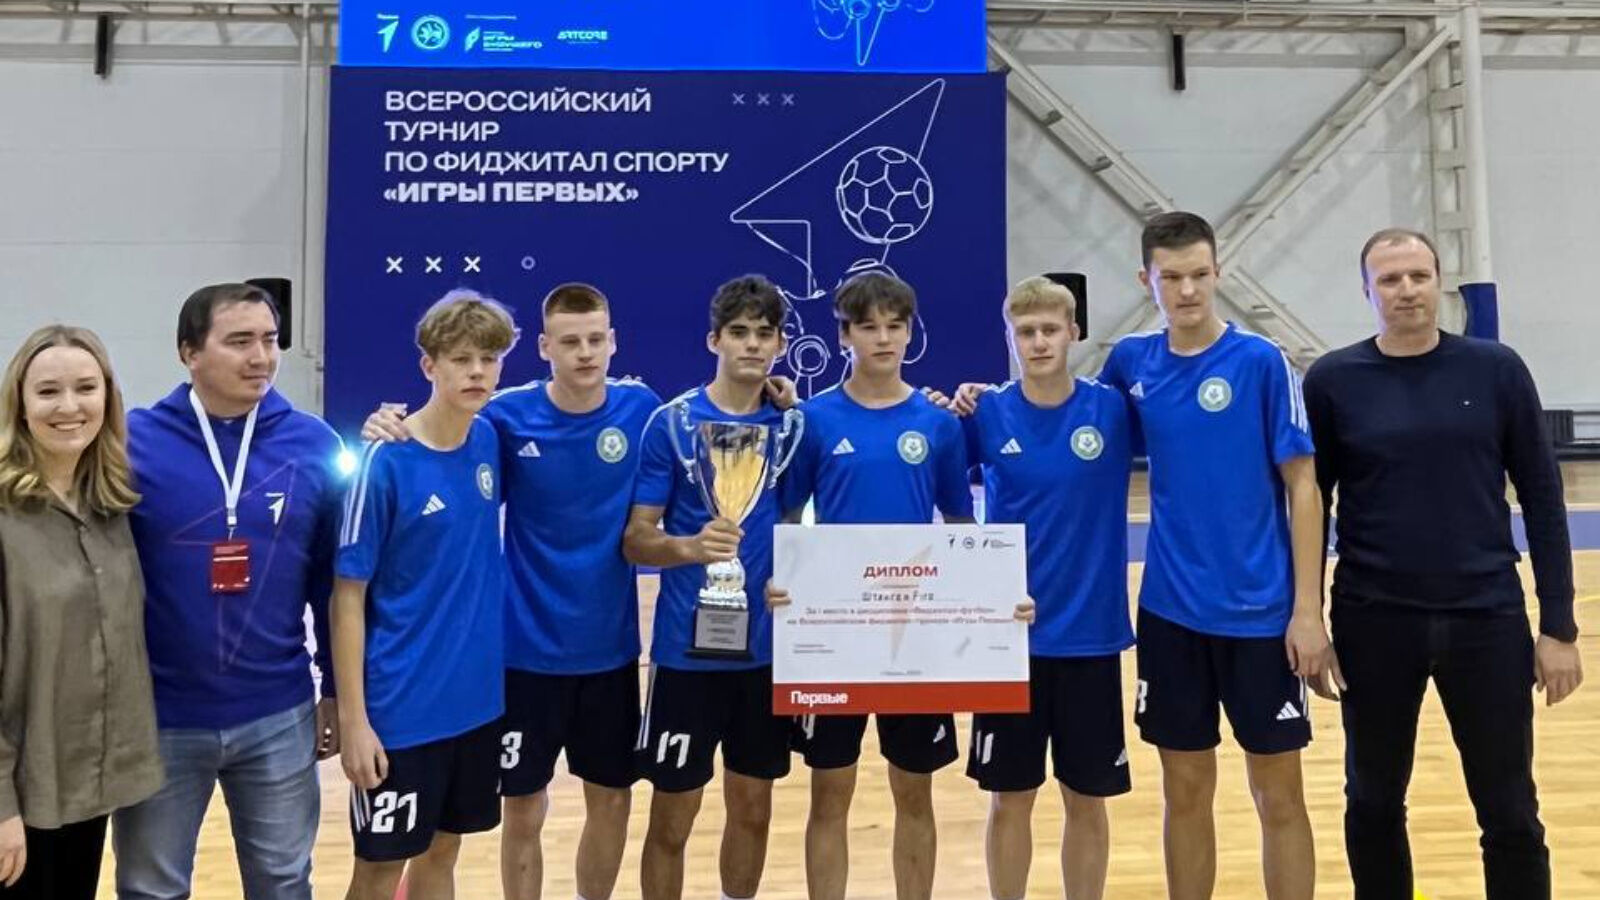 Команда из Альметьевска заняла 1 место во Всероссийском турнире по фиджитал спорту «Игры первых»